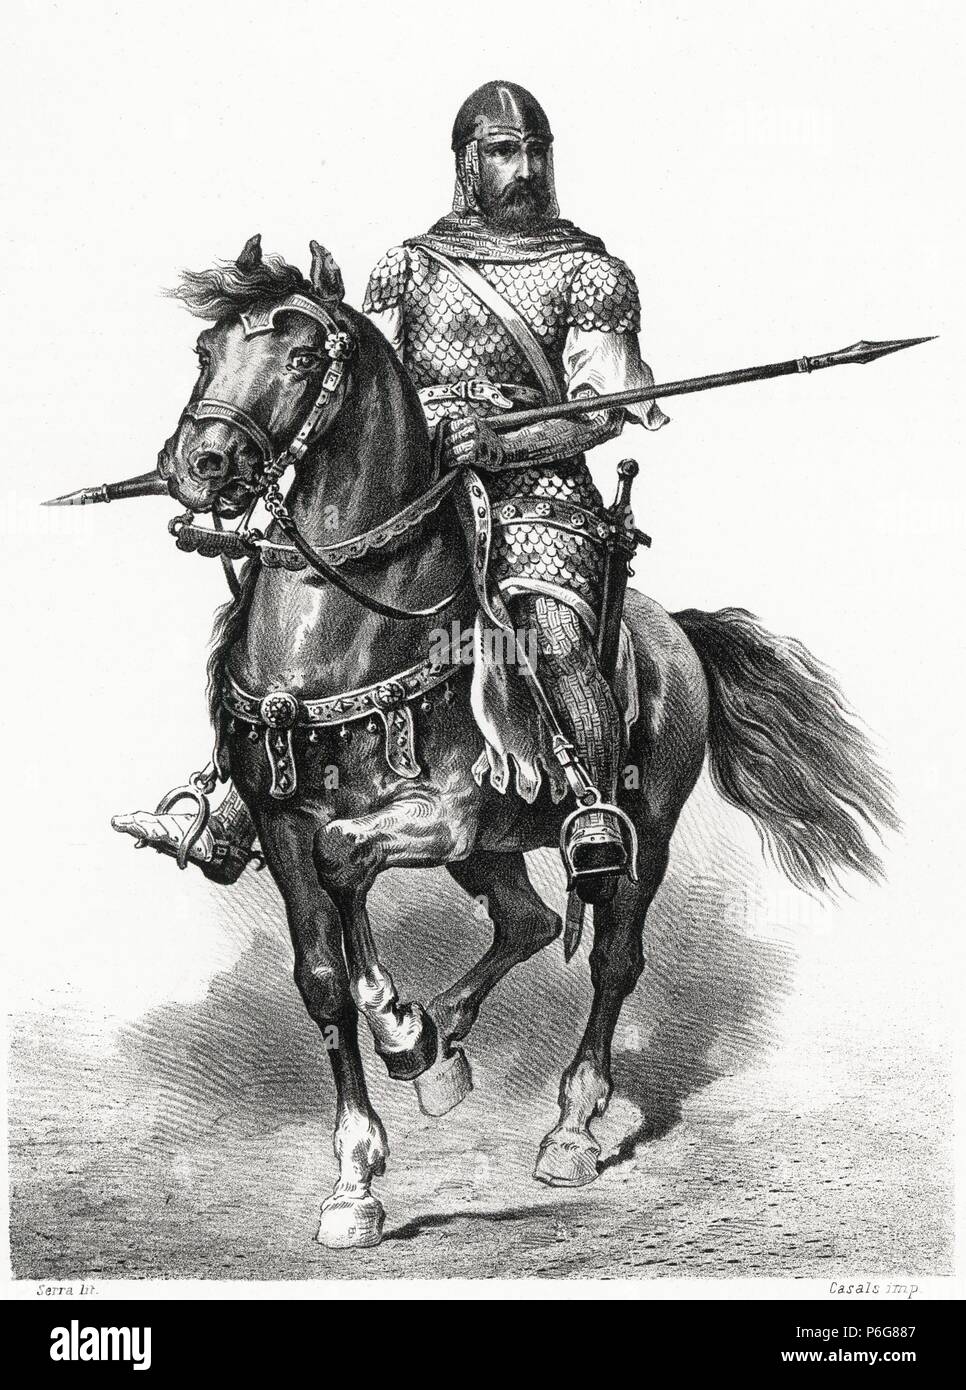 Historia de España. Rodrigo Díaz de Vivar, el Cid Campeador (1048-1099), un lomos de su caballo Babieca. Grabado de 1872. Foto Stock